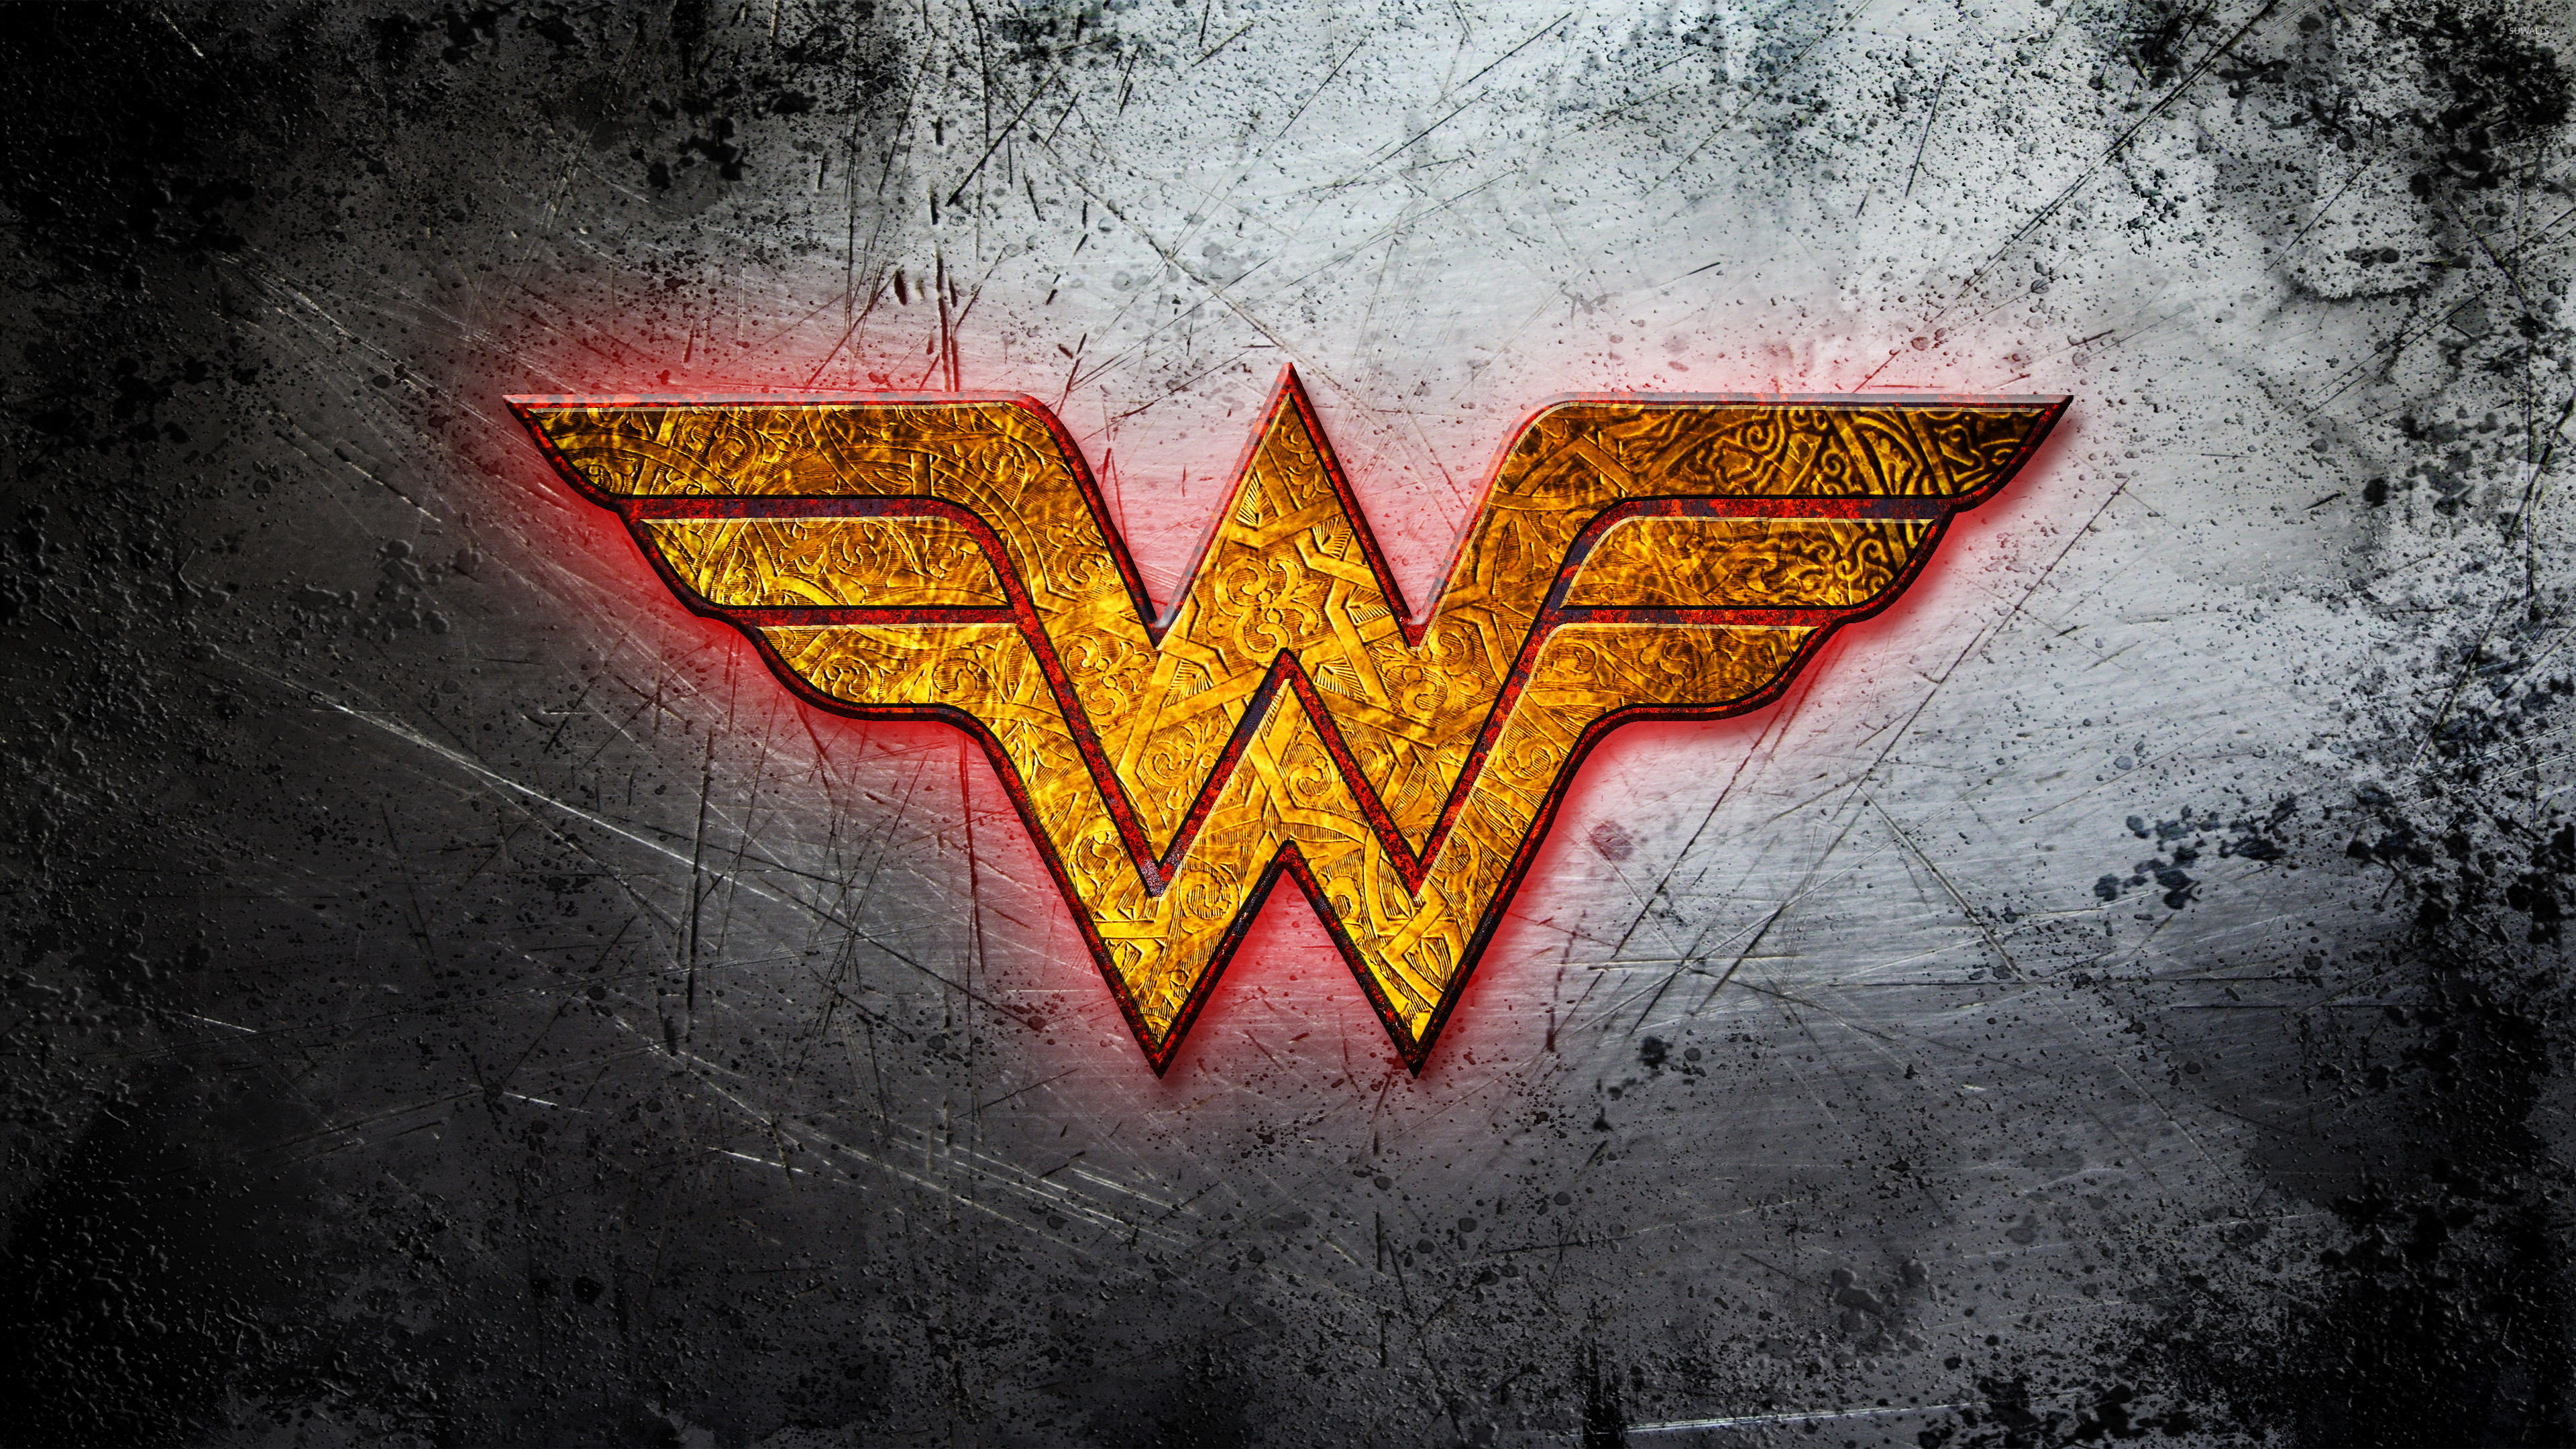 3840x2160 Wonder Woman golden logo wallpaper